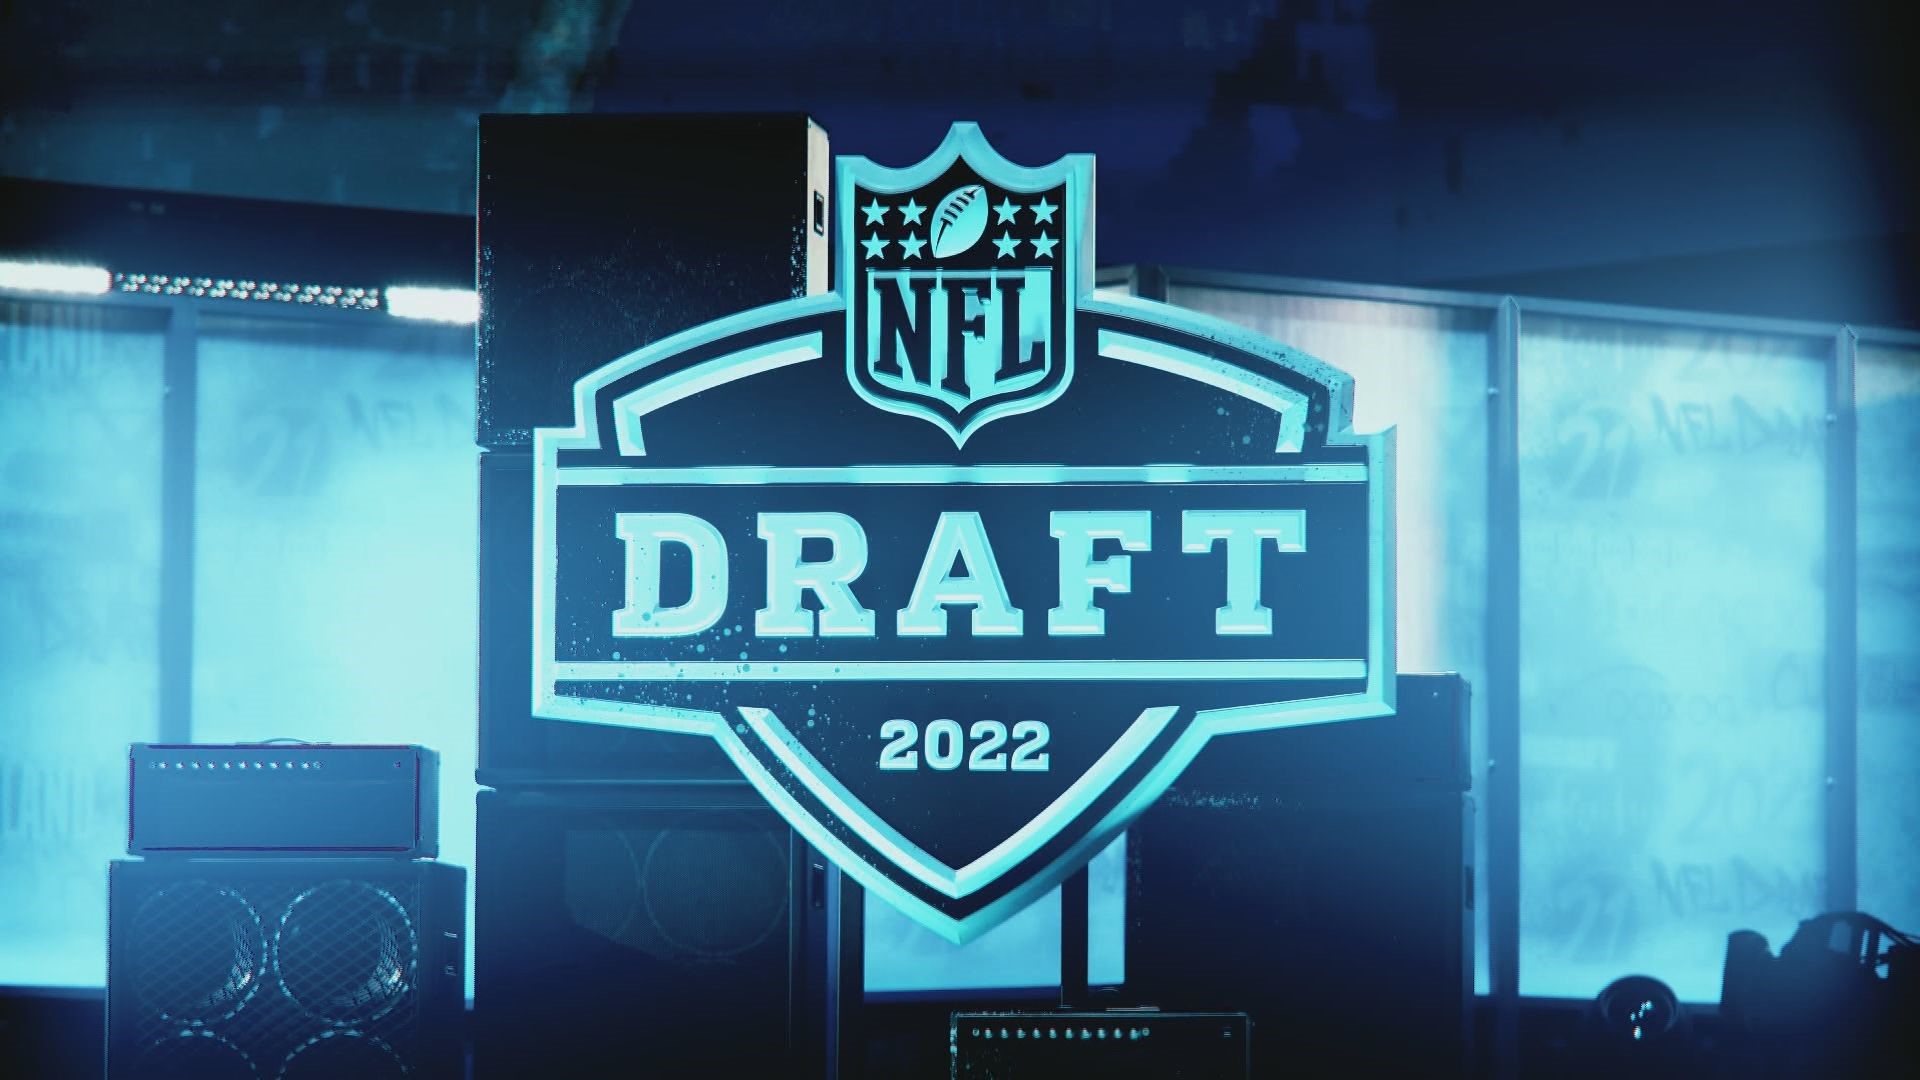 nfl draft 2022 on tv